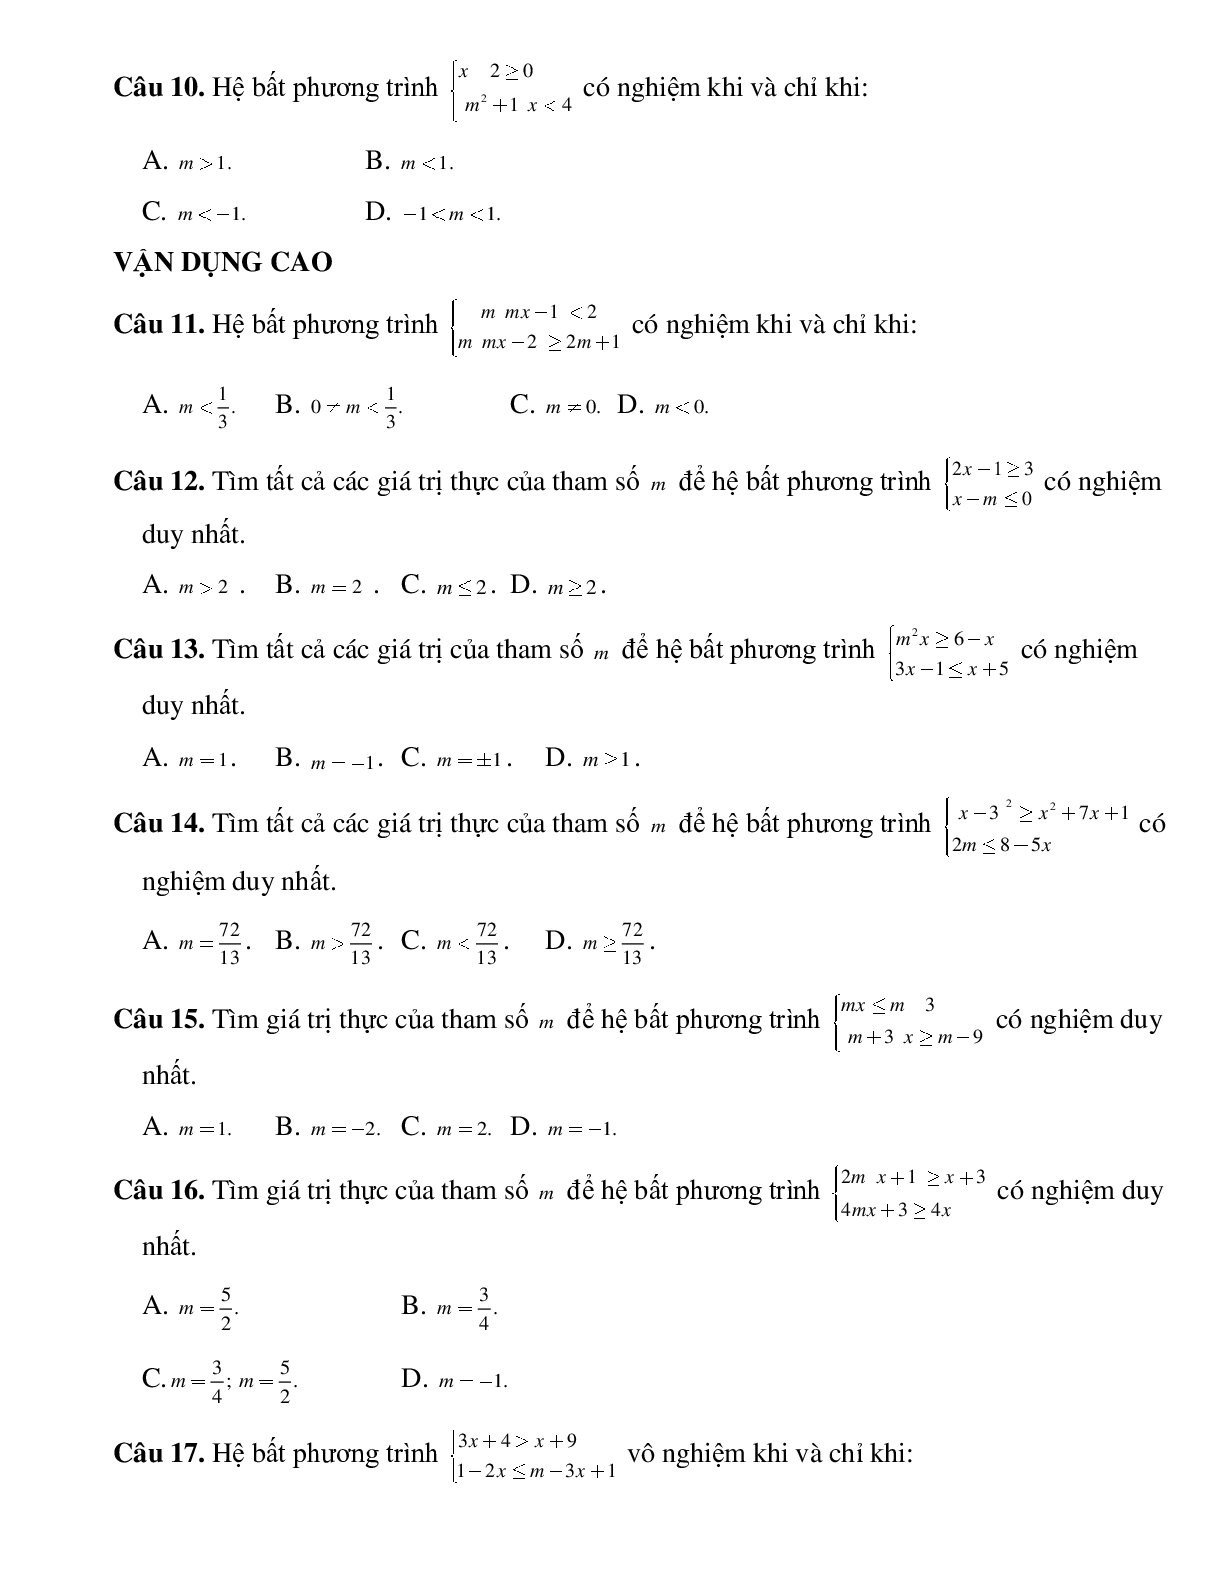 Bài tập tìm tham số để hệ phương trình có nghiệm thỏa mãn điều kiện cho trước Toán 10 (trang 3)